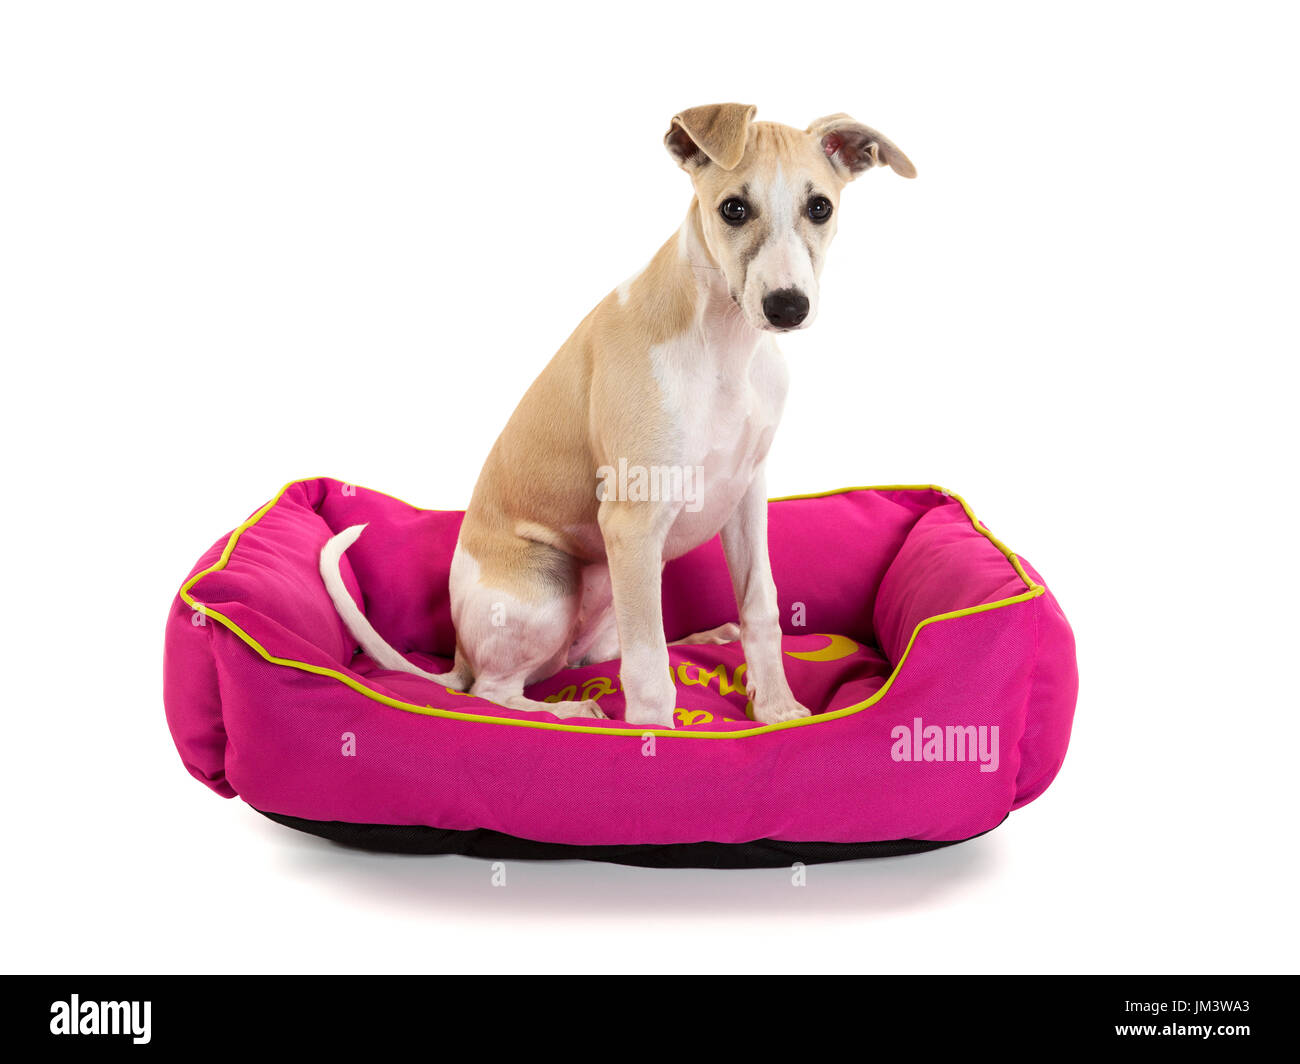 Carino Il whippet cucciolo seduto nel suo cane rosa bed isolati su sfondo bianco Foto Stock